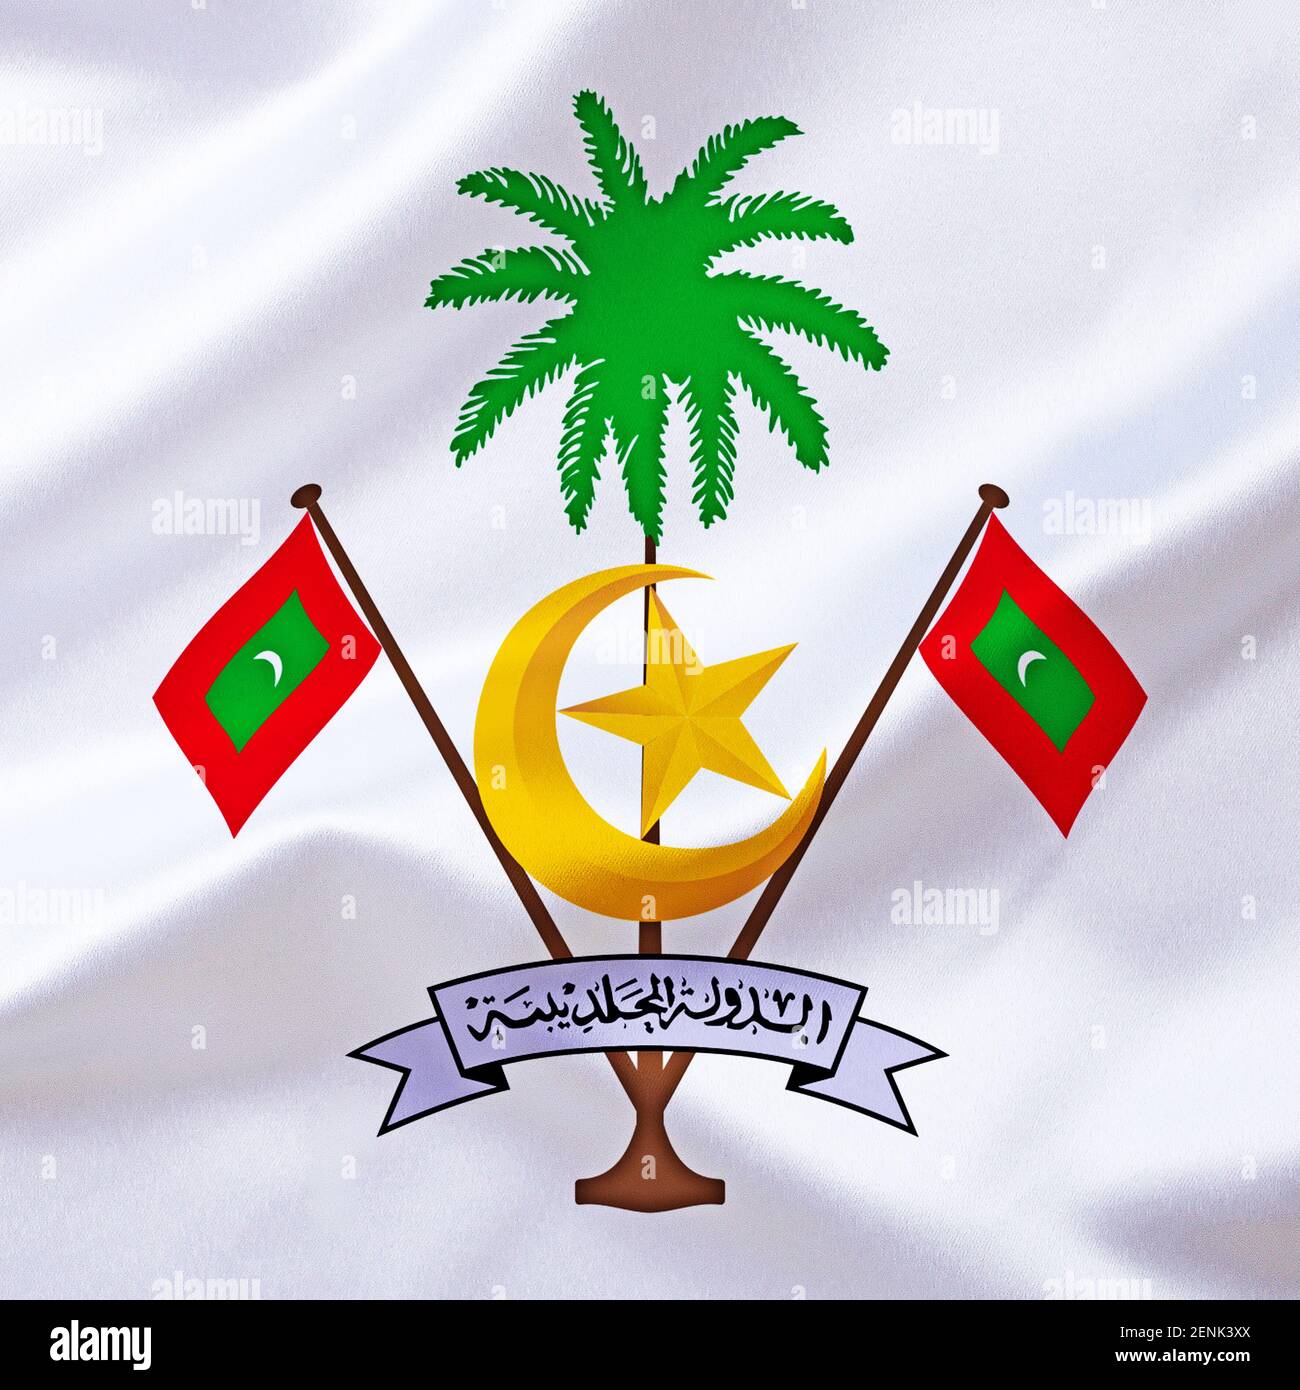 Das Wappen von den Malediven, Inselstaat, Inseln in Südasien, Stock Photo